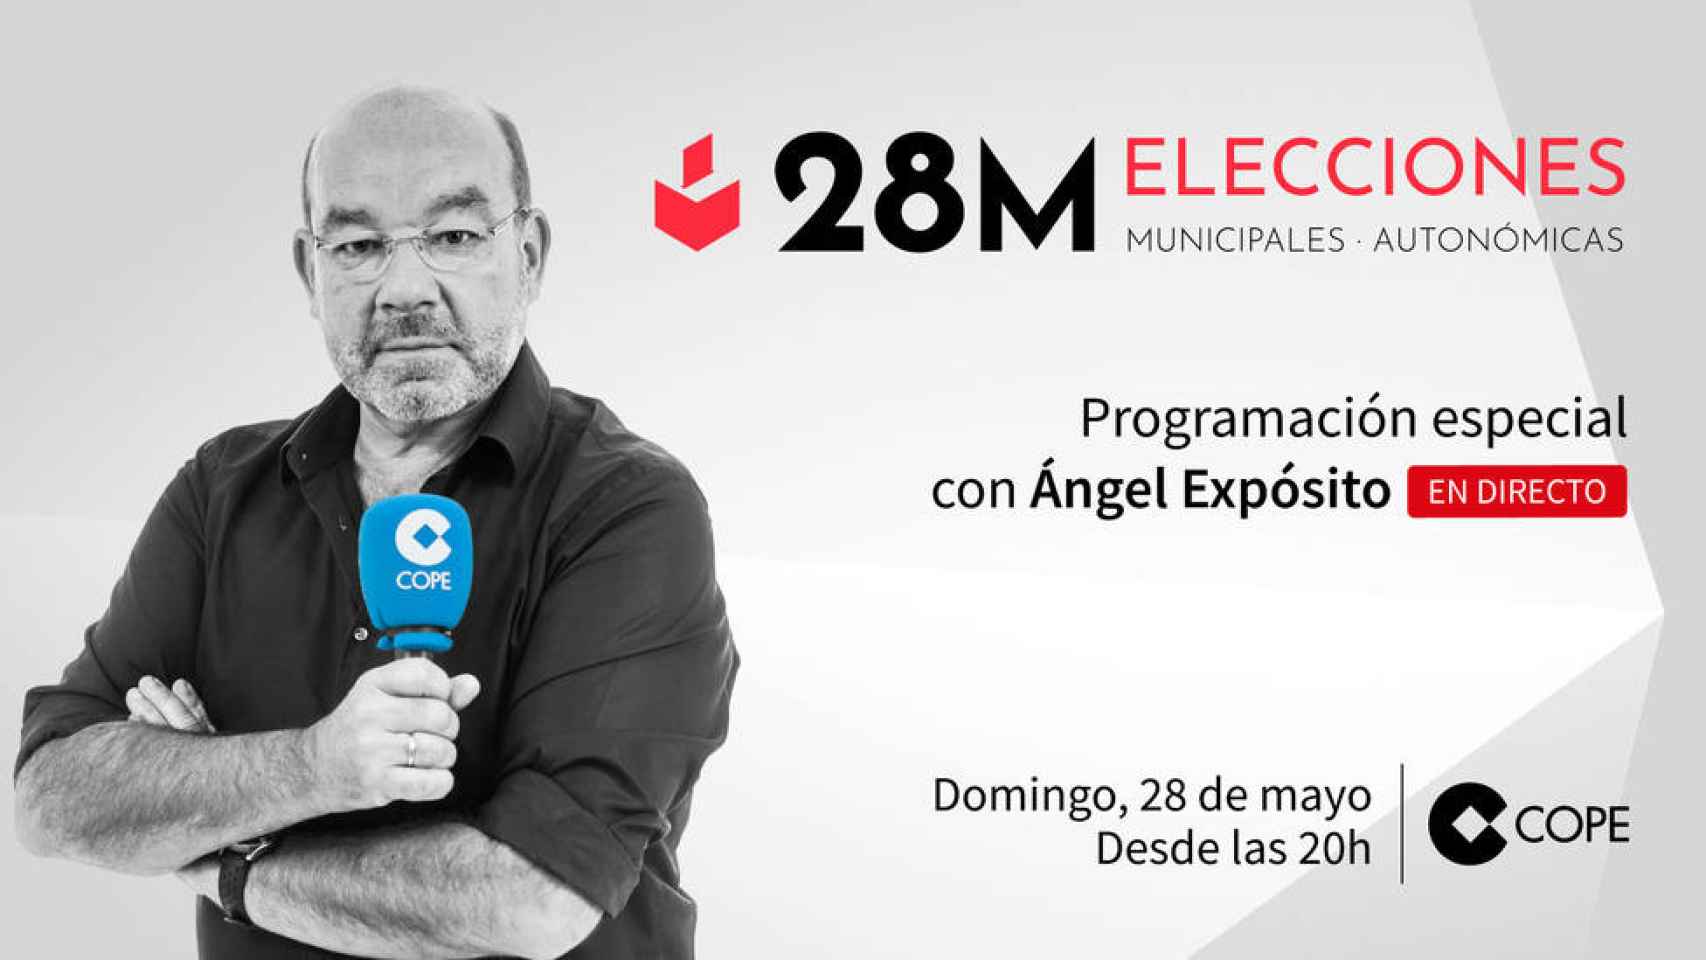 Ángel Expósito estará al frente del especial elecciones de la COPE.